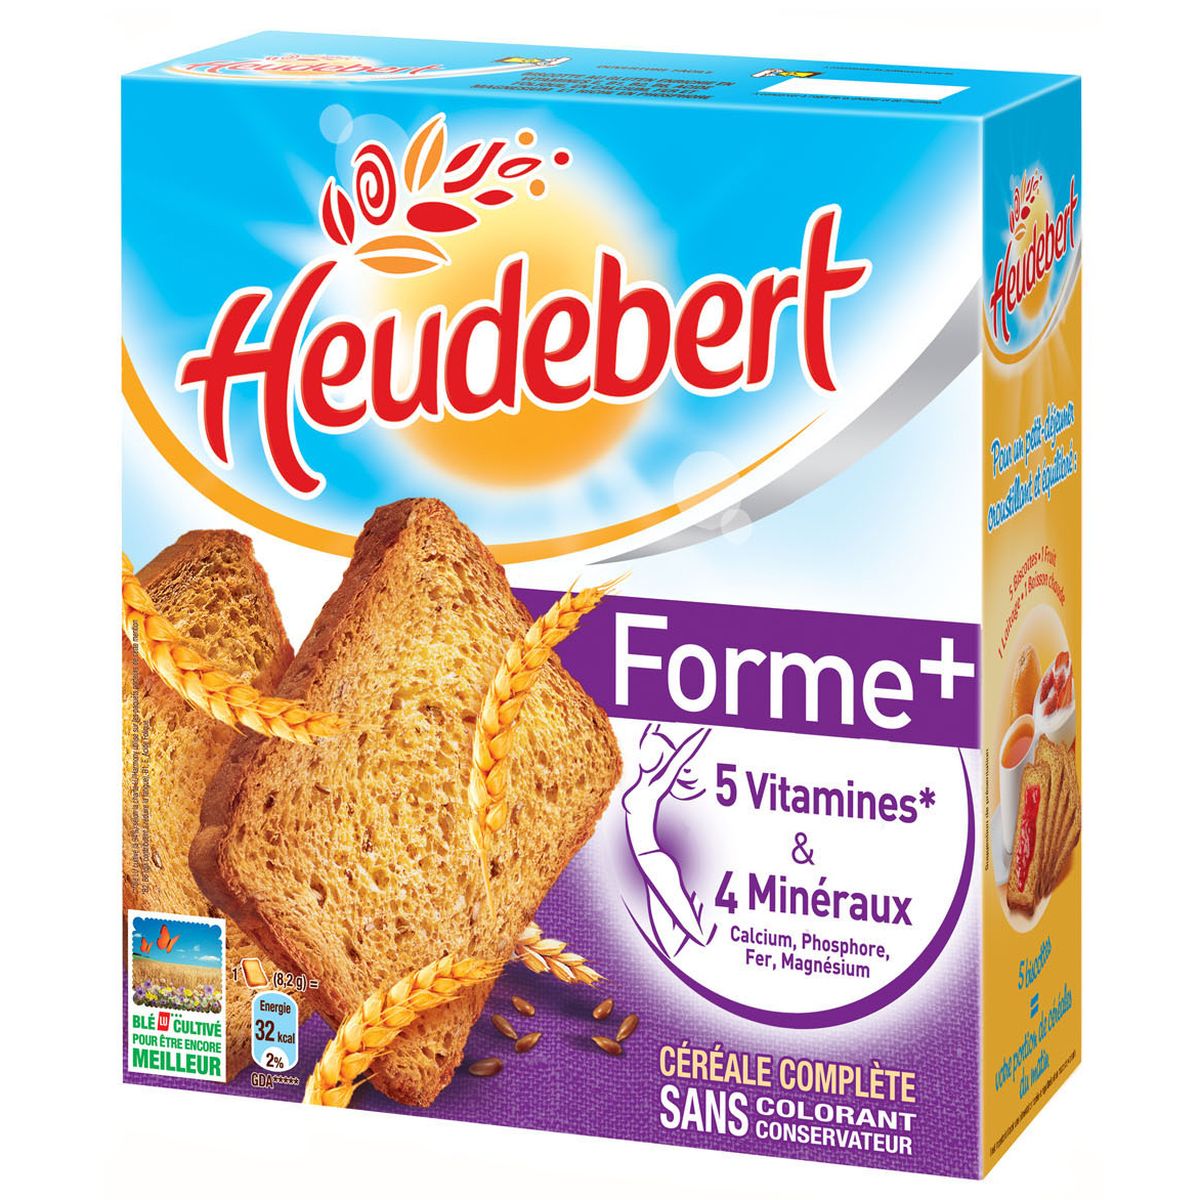 Nouveaux : les biscottes Heudebert BIO - Carrefour Réunion